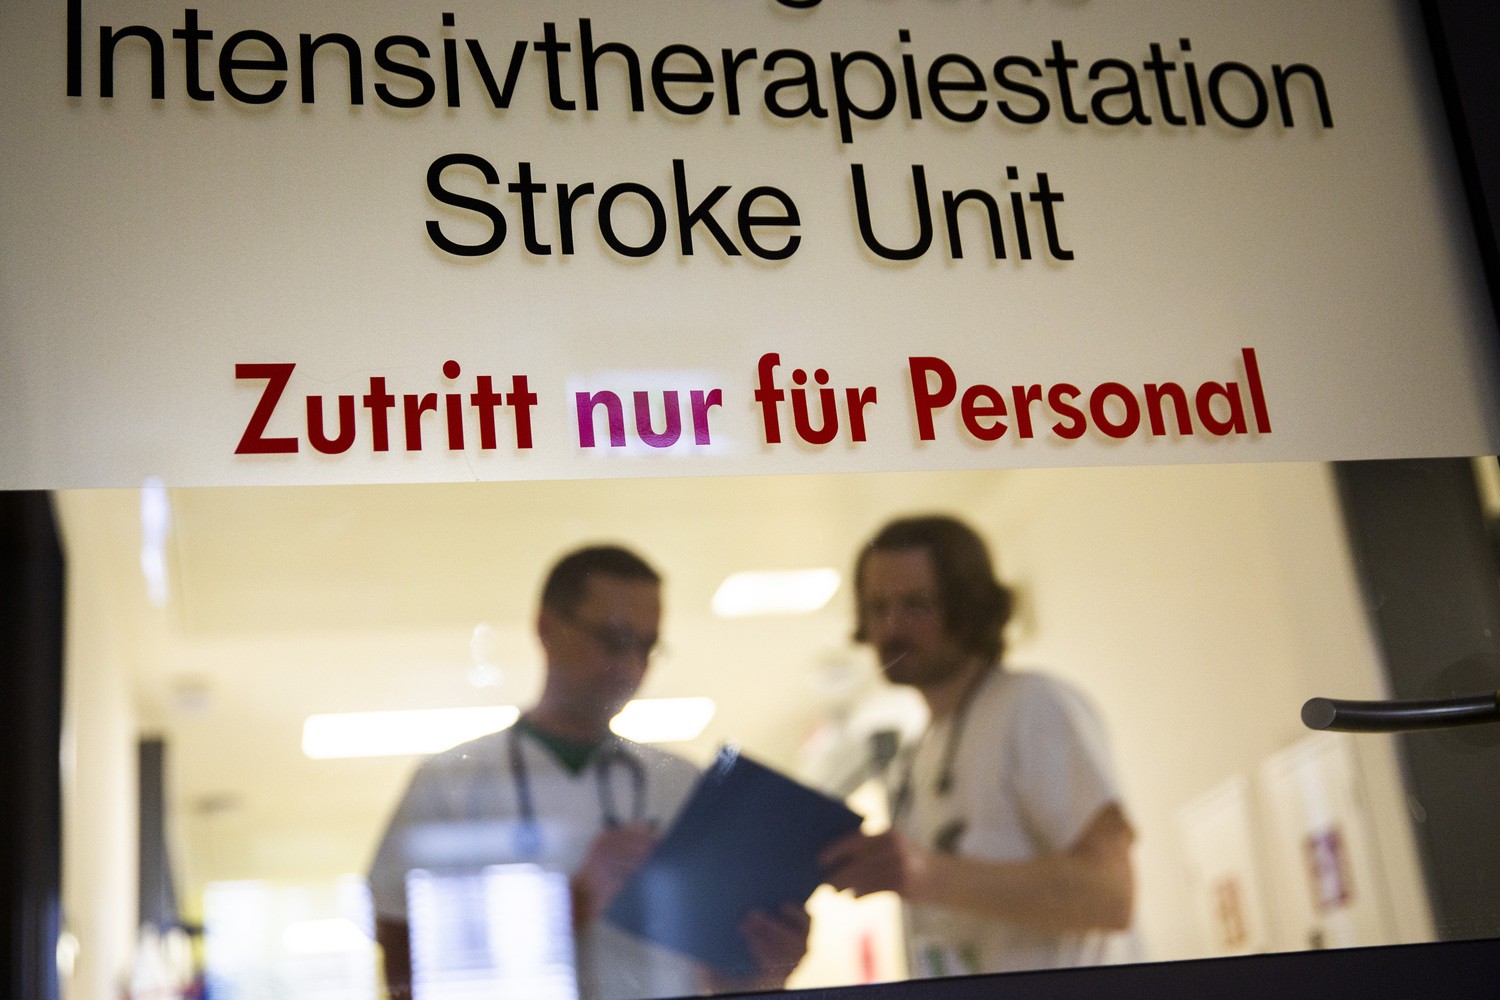 Auf der Stroke Unit, einer speziellen Intensivtherapiestation  des UKL, werden Patienten, die einen „Schlag“ erlitten haben, mit modernsten Therapien und Geräten behandelt.